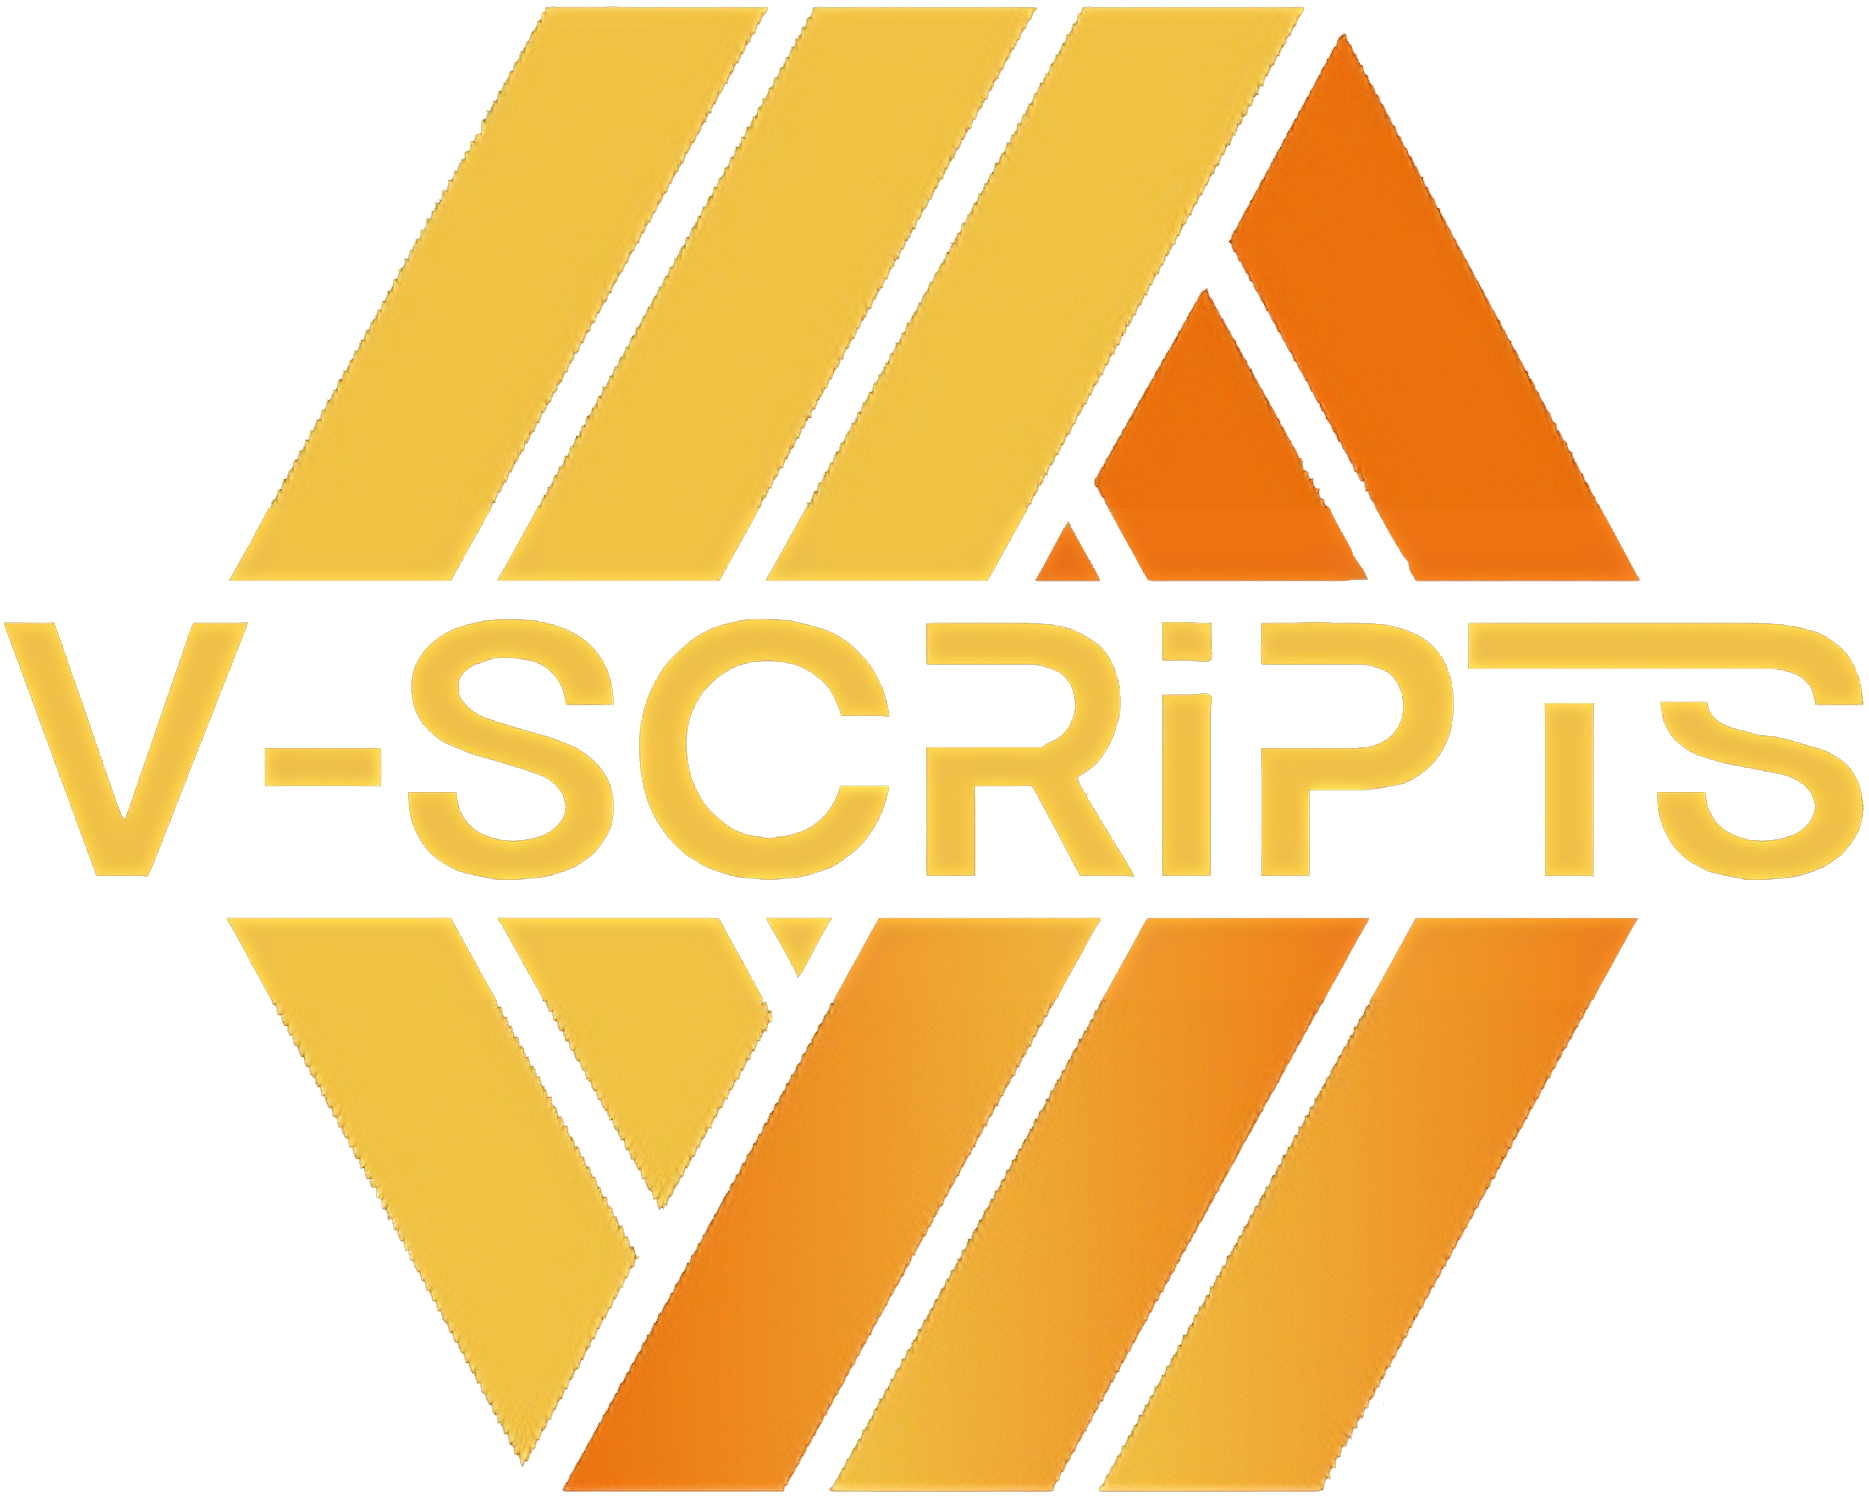 V-Scripts